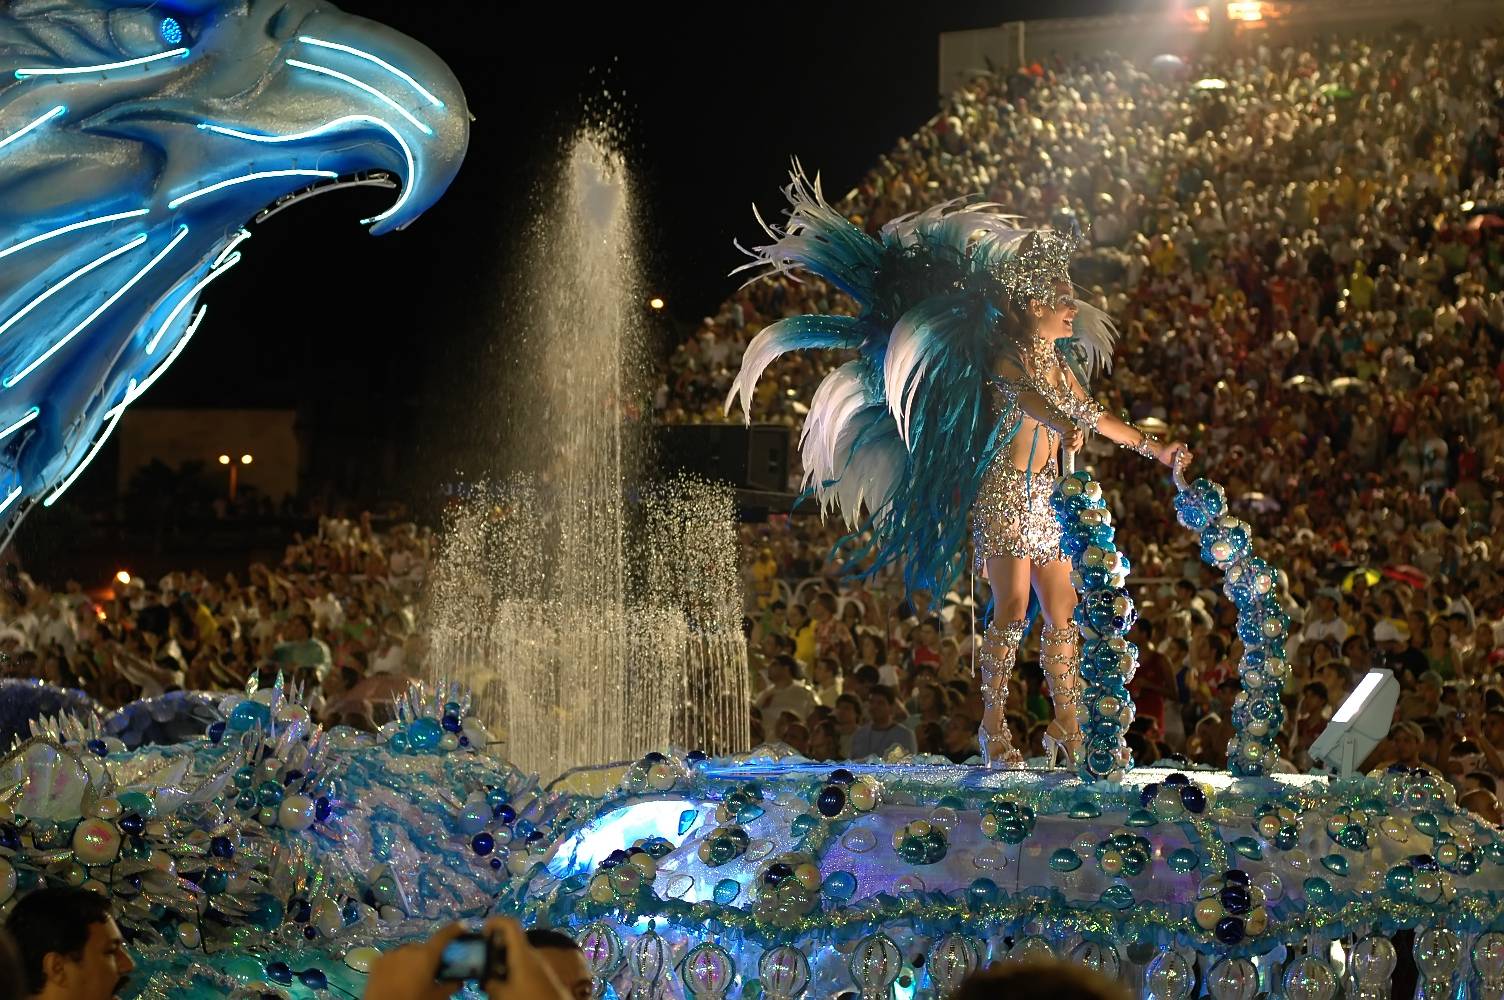 Rio Carnival 20222023 Celebrate Carnival in Brazil in Rio de Janeiro